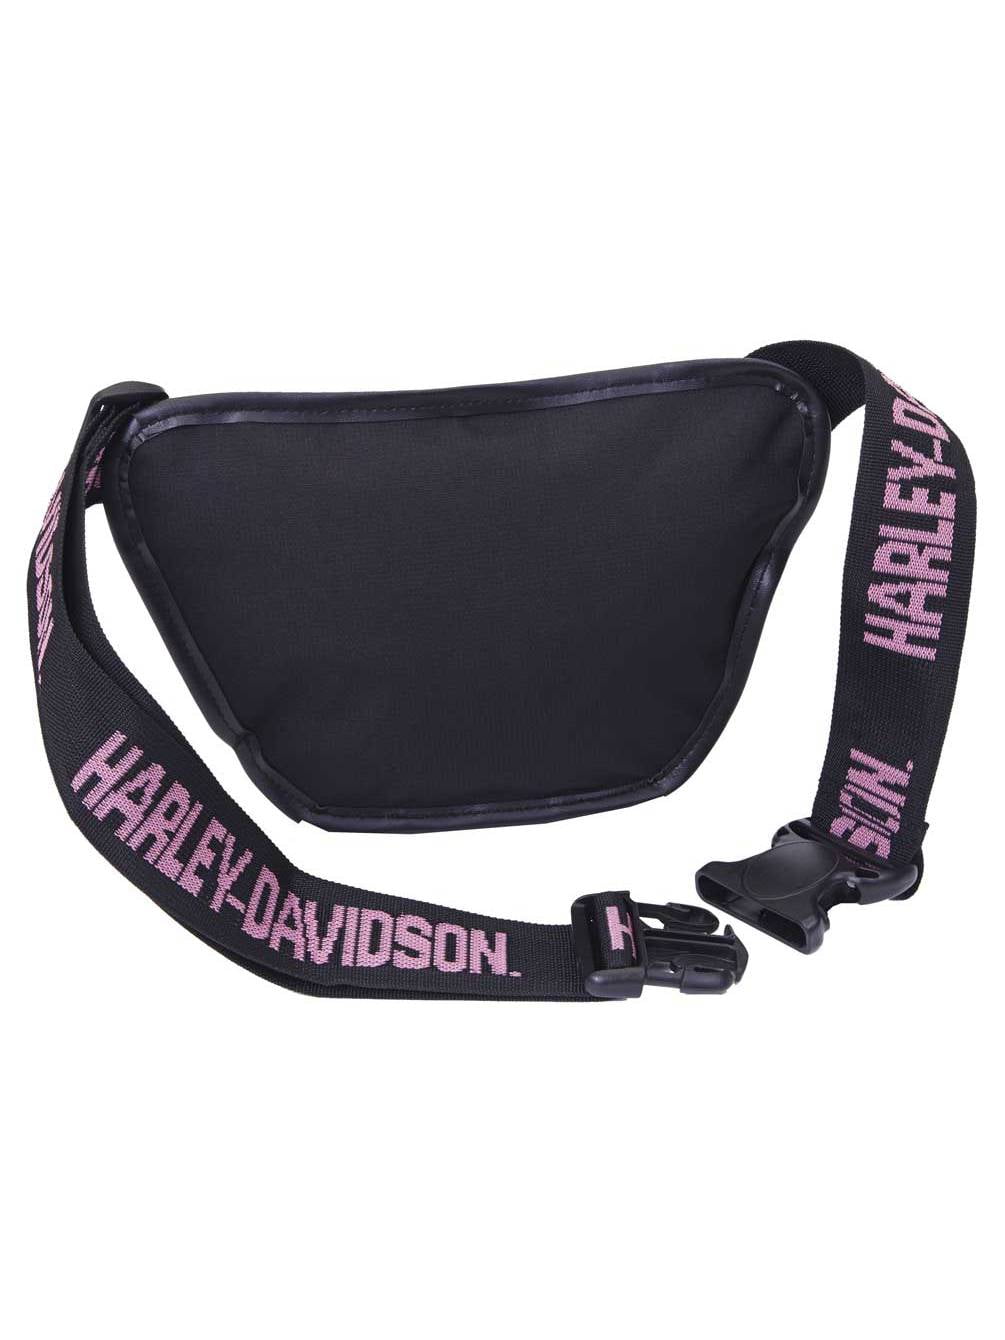 Harley-Davidson, Bags, Harley Davidson Shoulder Bag Pink And Black